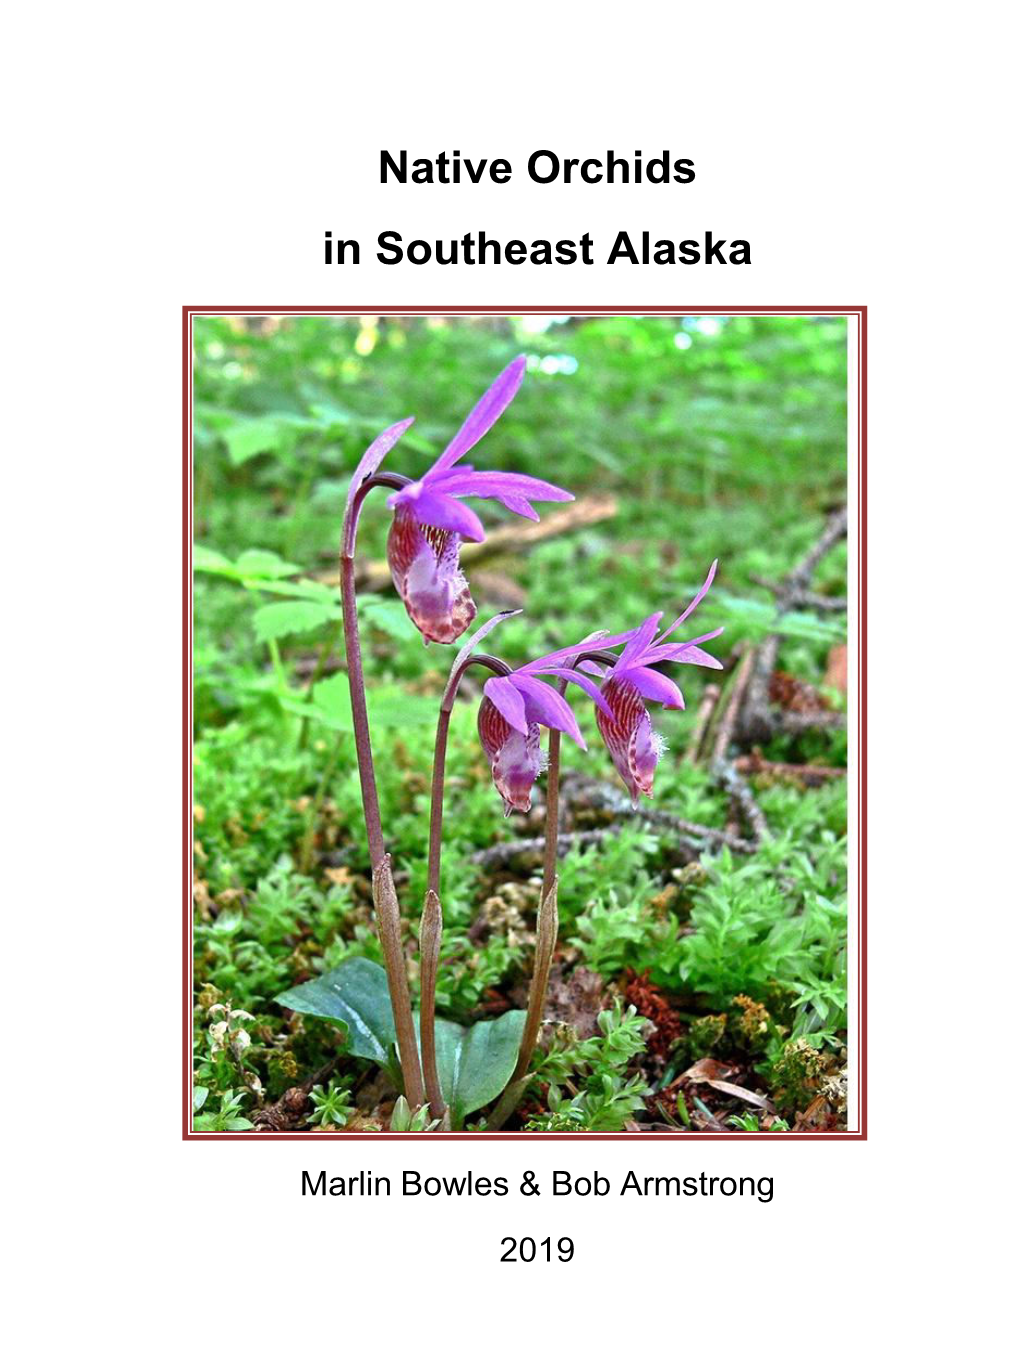 Native Orchids of Southeast Alaska